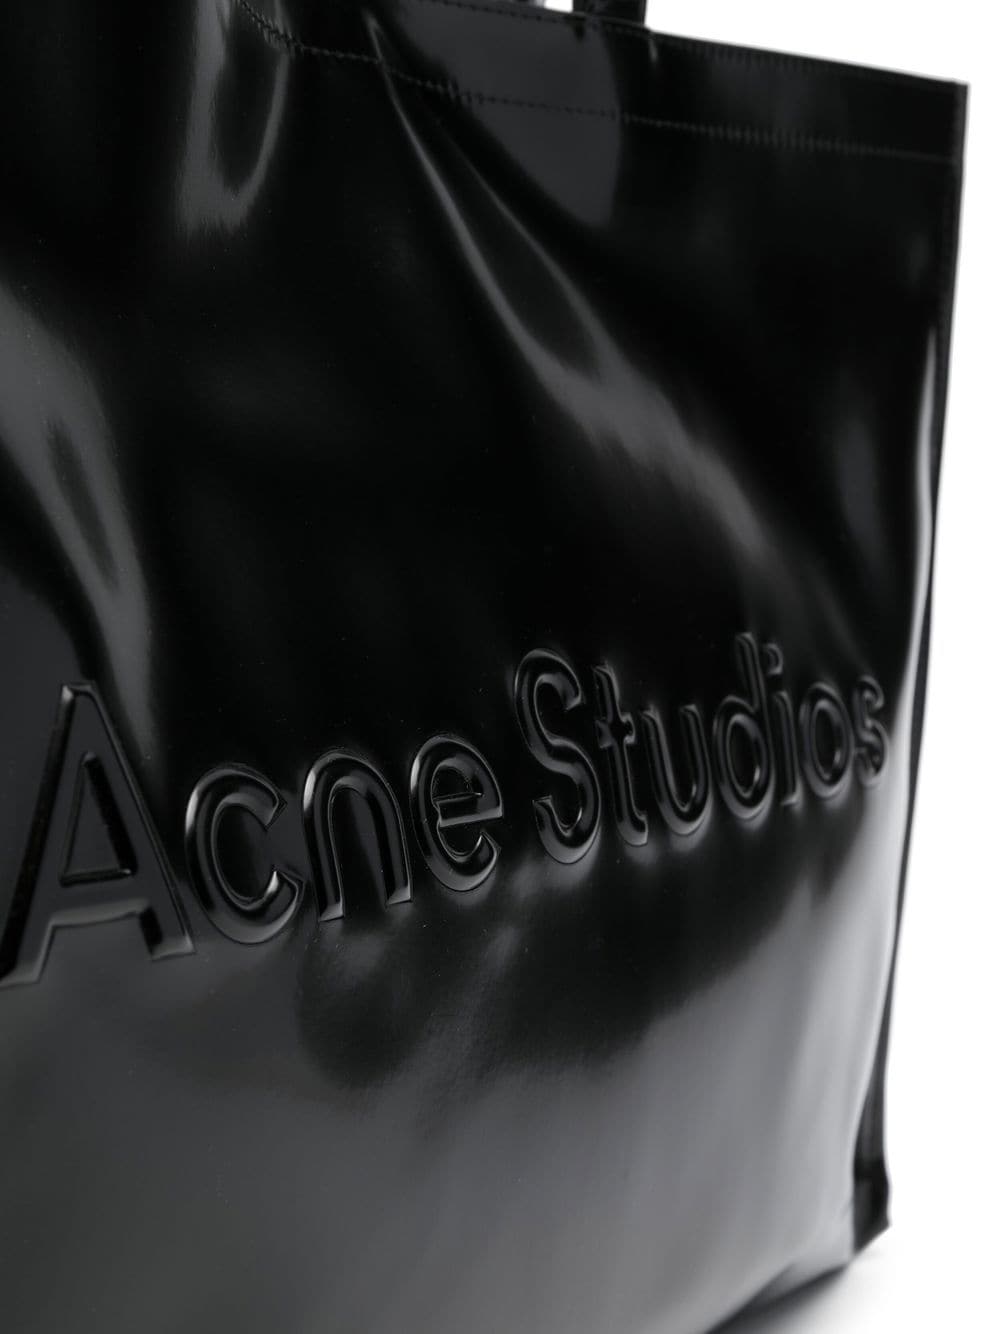 Acne Studios Grand sac cabas à logo embossé - Lothaire